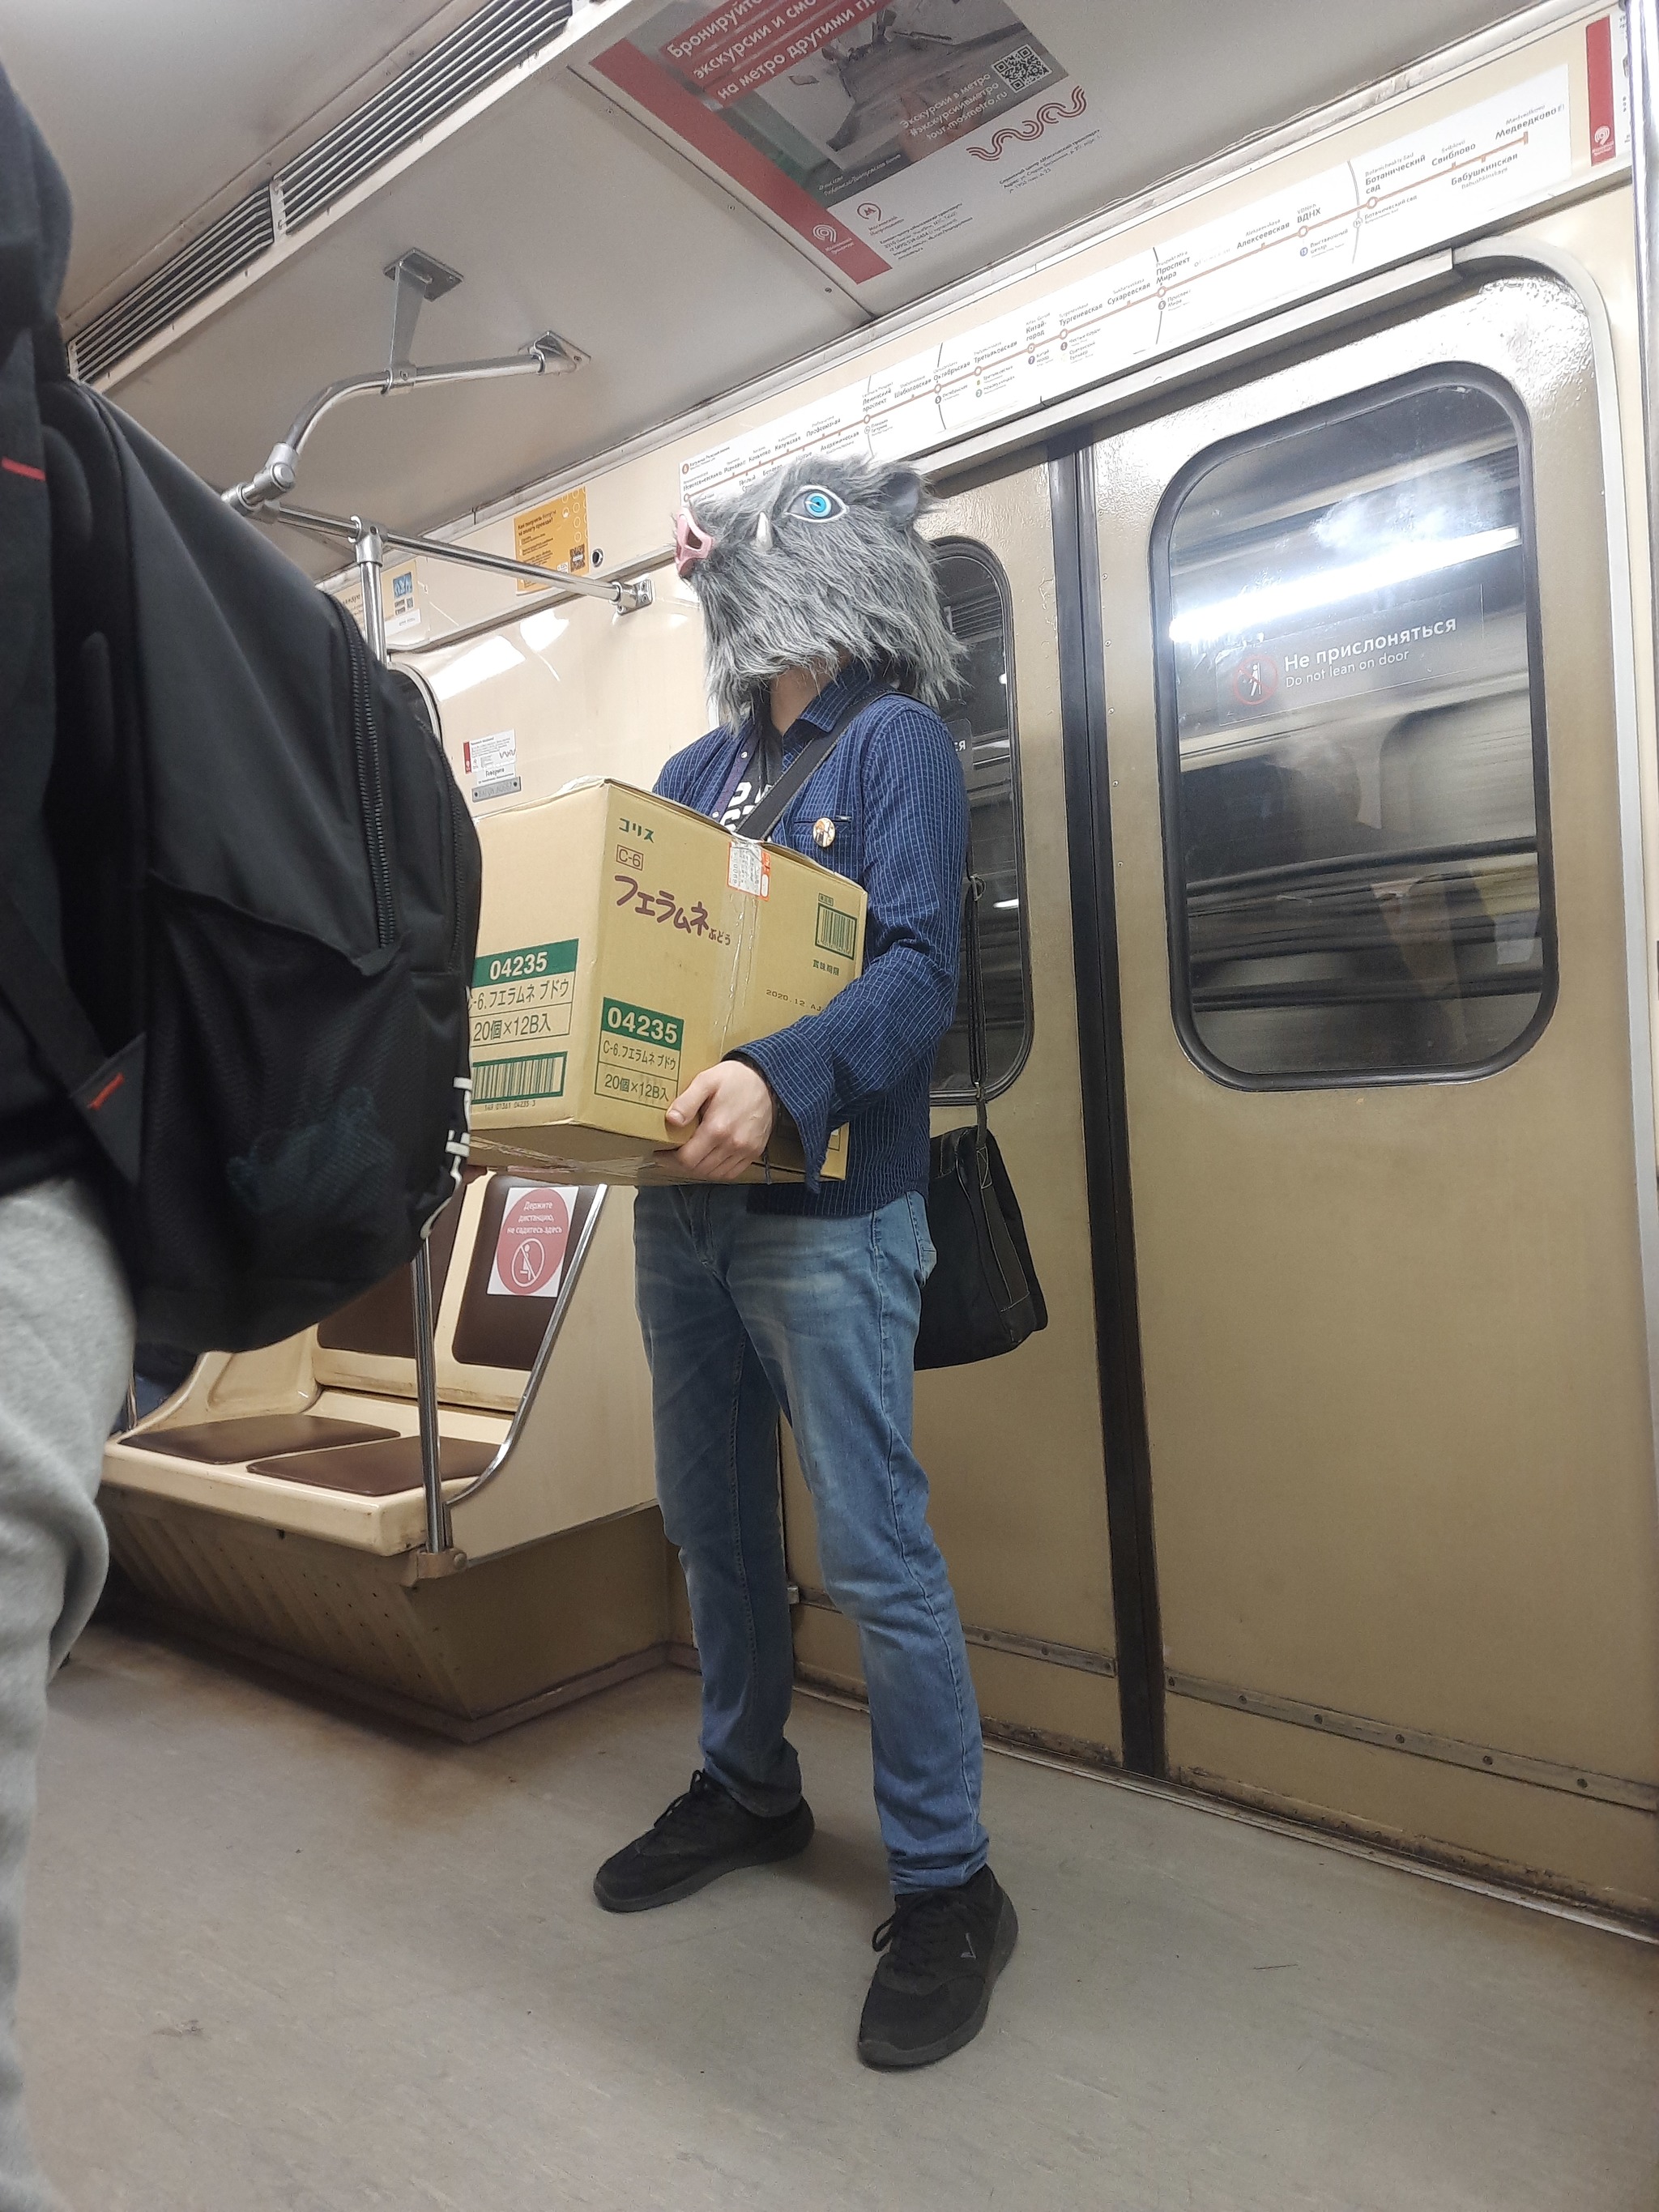 Она читает в метро. Метро. Вятро. Люди едут в метро. Ехать на метро.